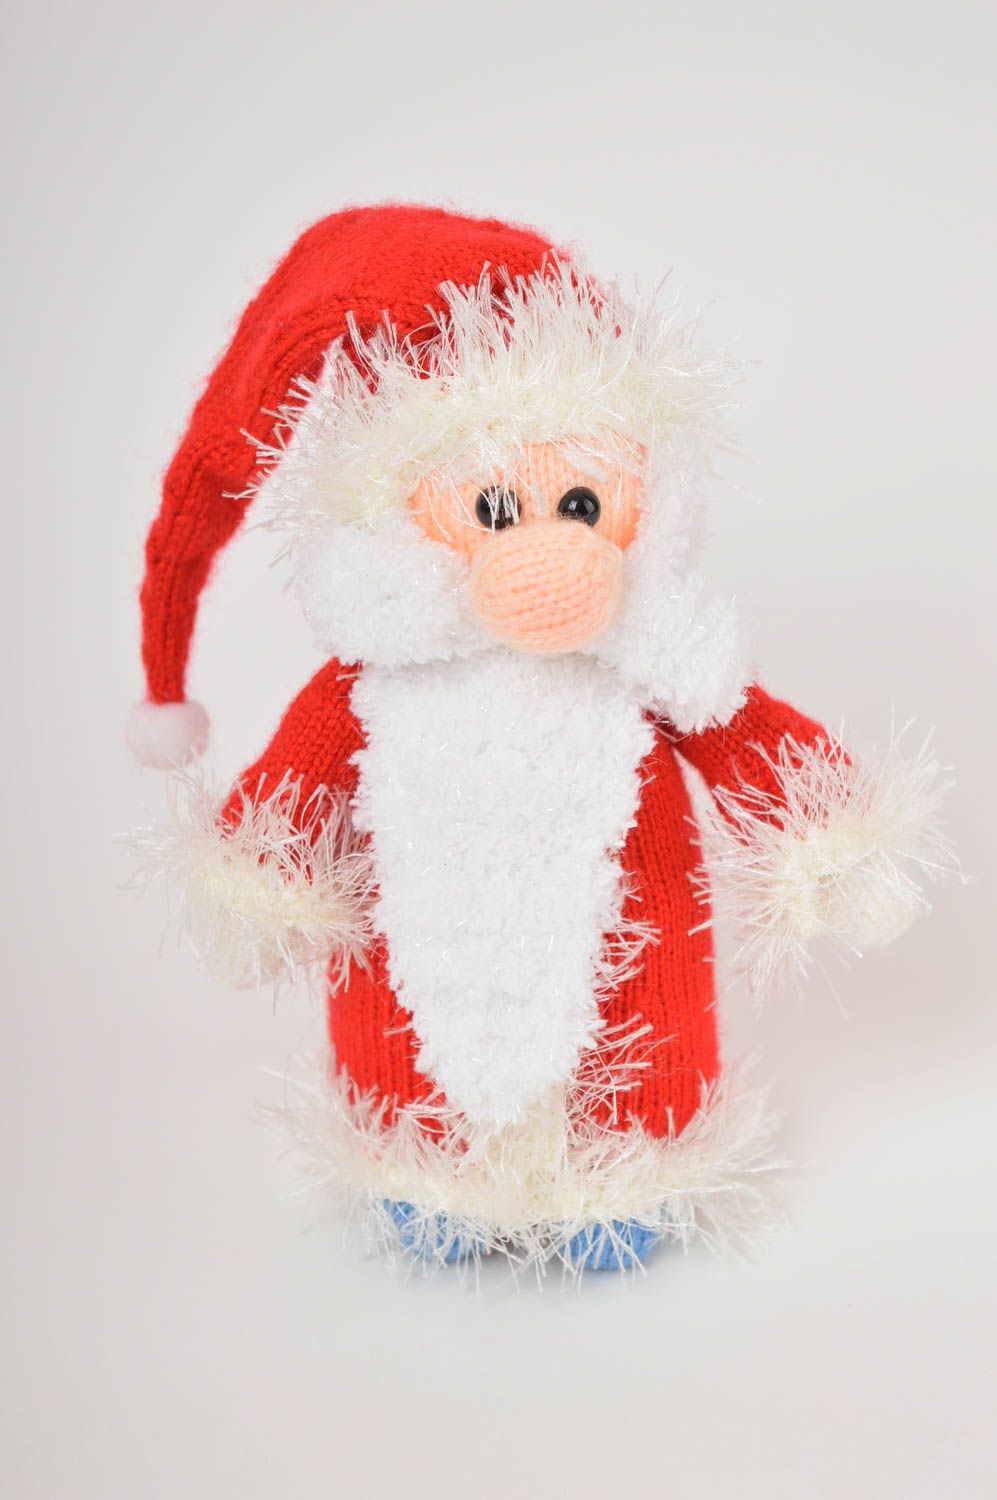 Handmade ausgefallenes Spielzeug Geschenk Idee Weihnachtsmann gehäkelt foto 3